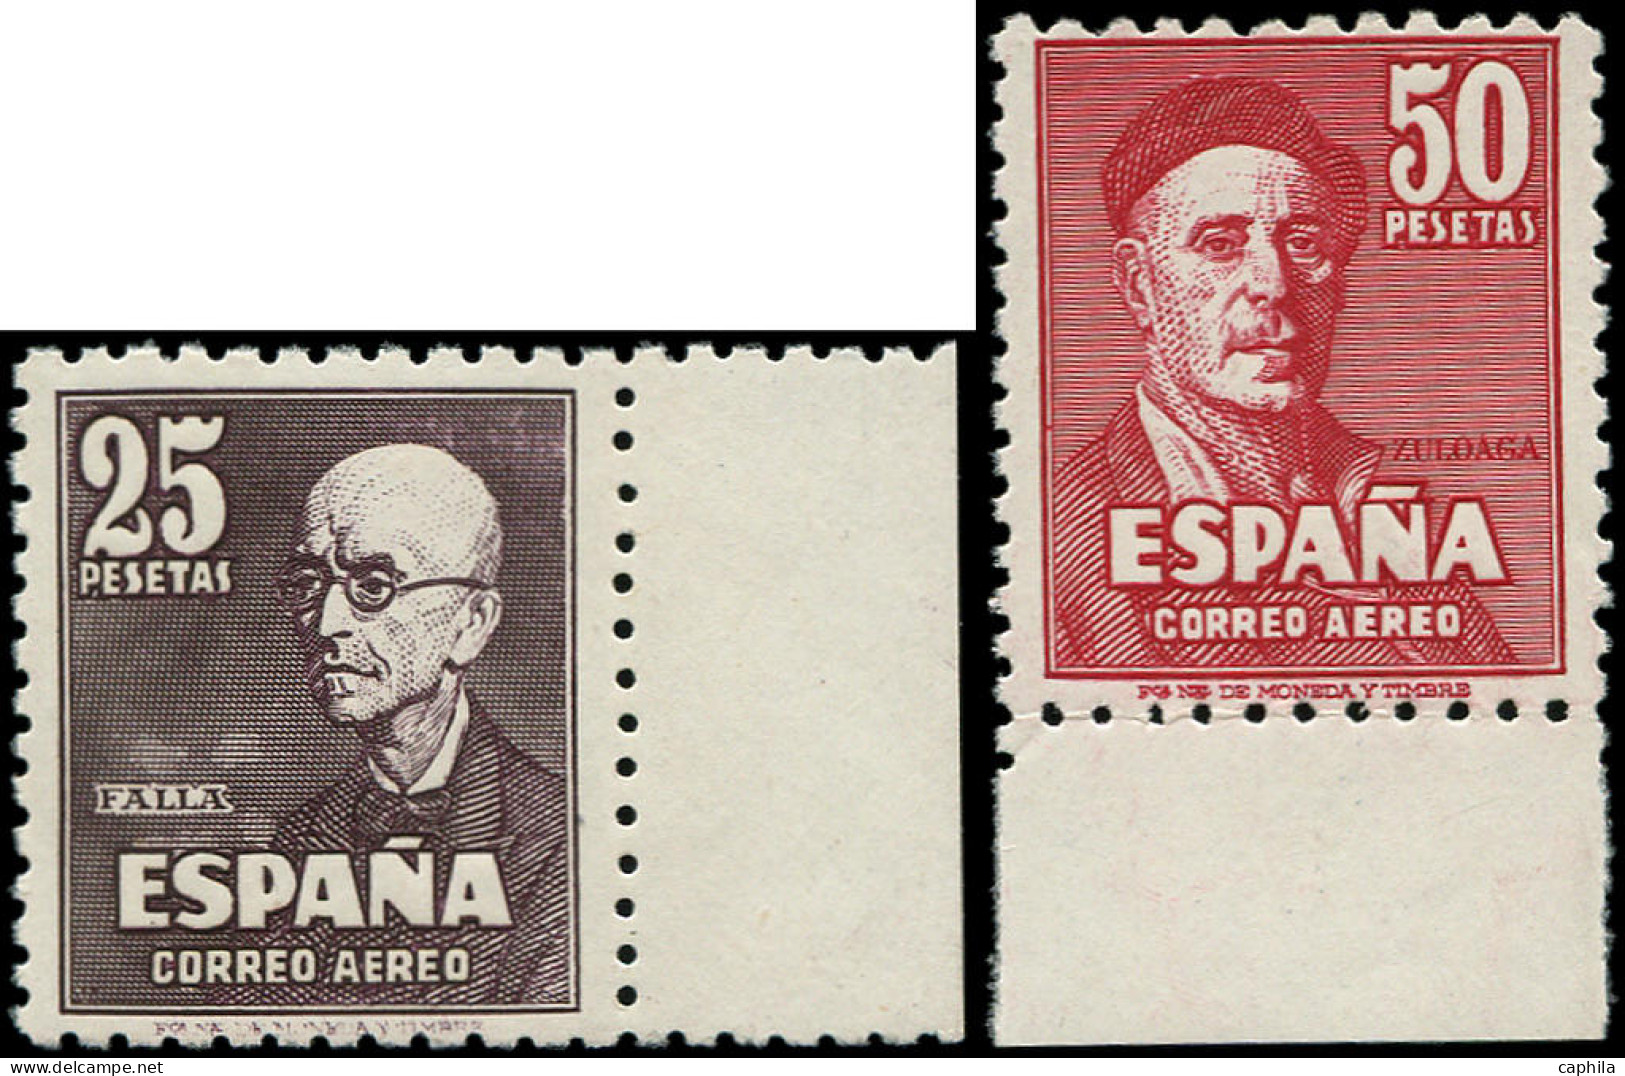 ** ESPAGNE - Poste Aérienne - 236/37, Signés Roumet, Bdf: Artistes - Unused Stamps